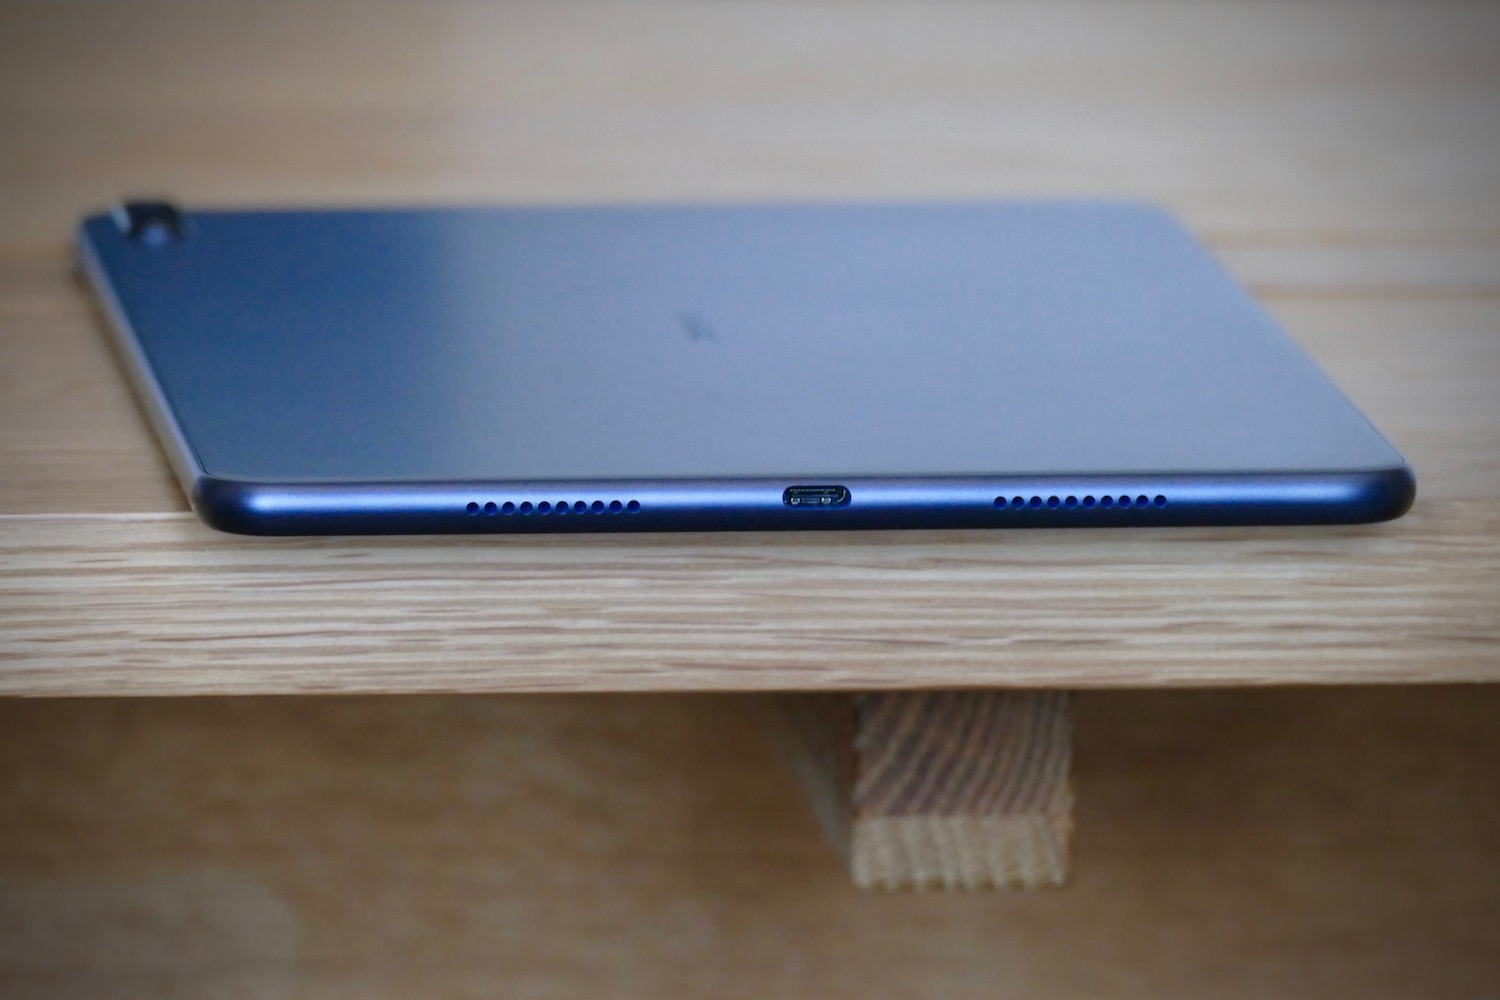  Huawei MatePad Pro WiFi 10.8-inches 2K Display 128GB 6GB RAM  (Gray) : Electronics